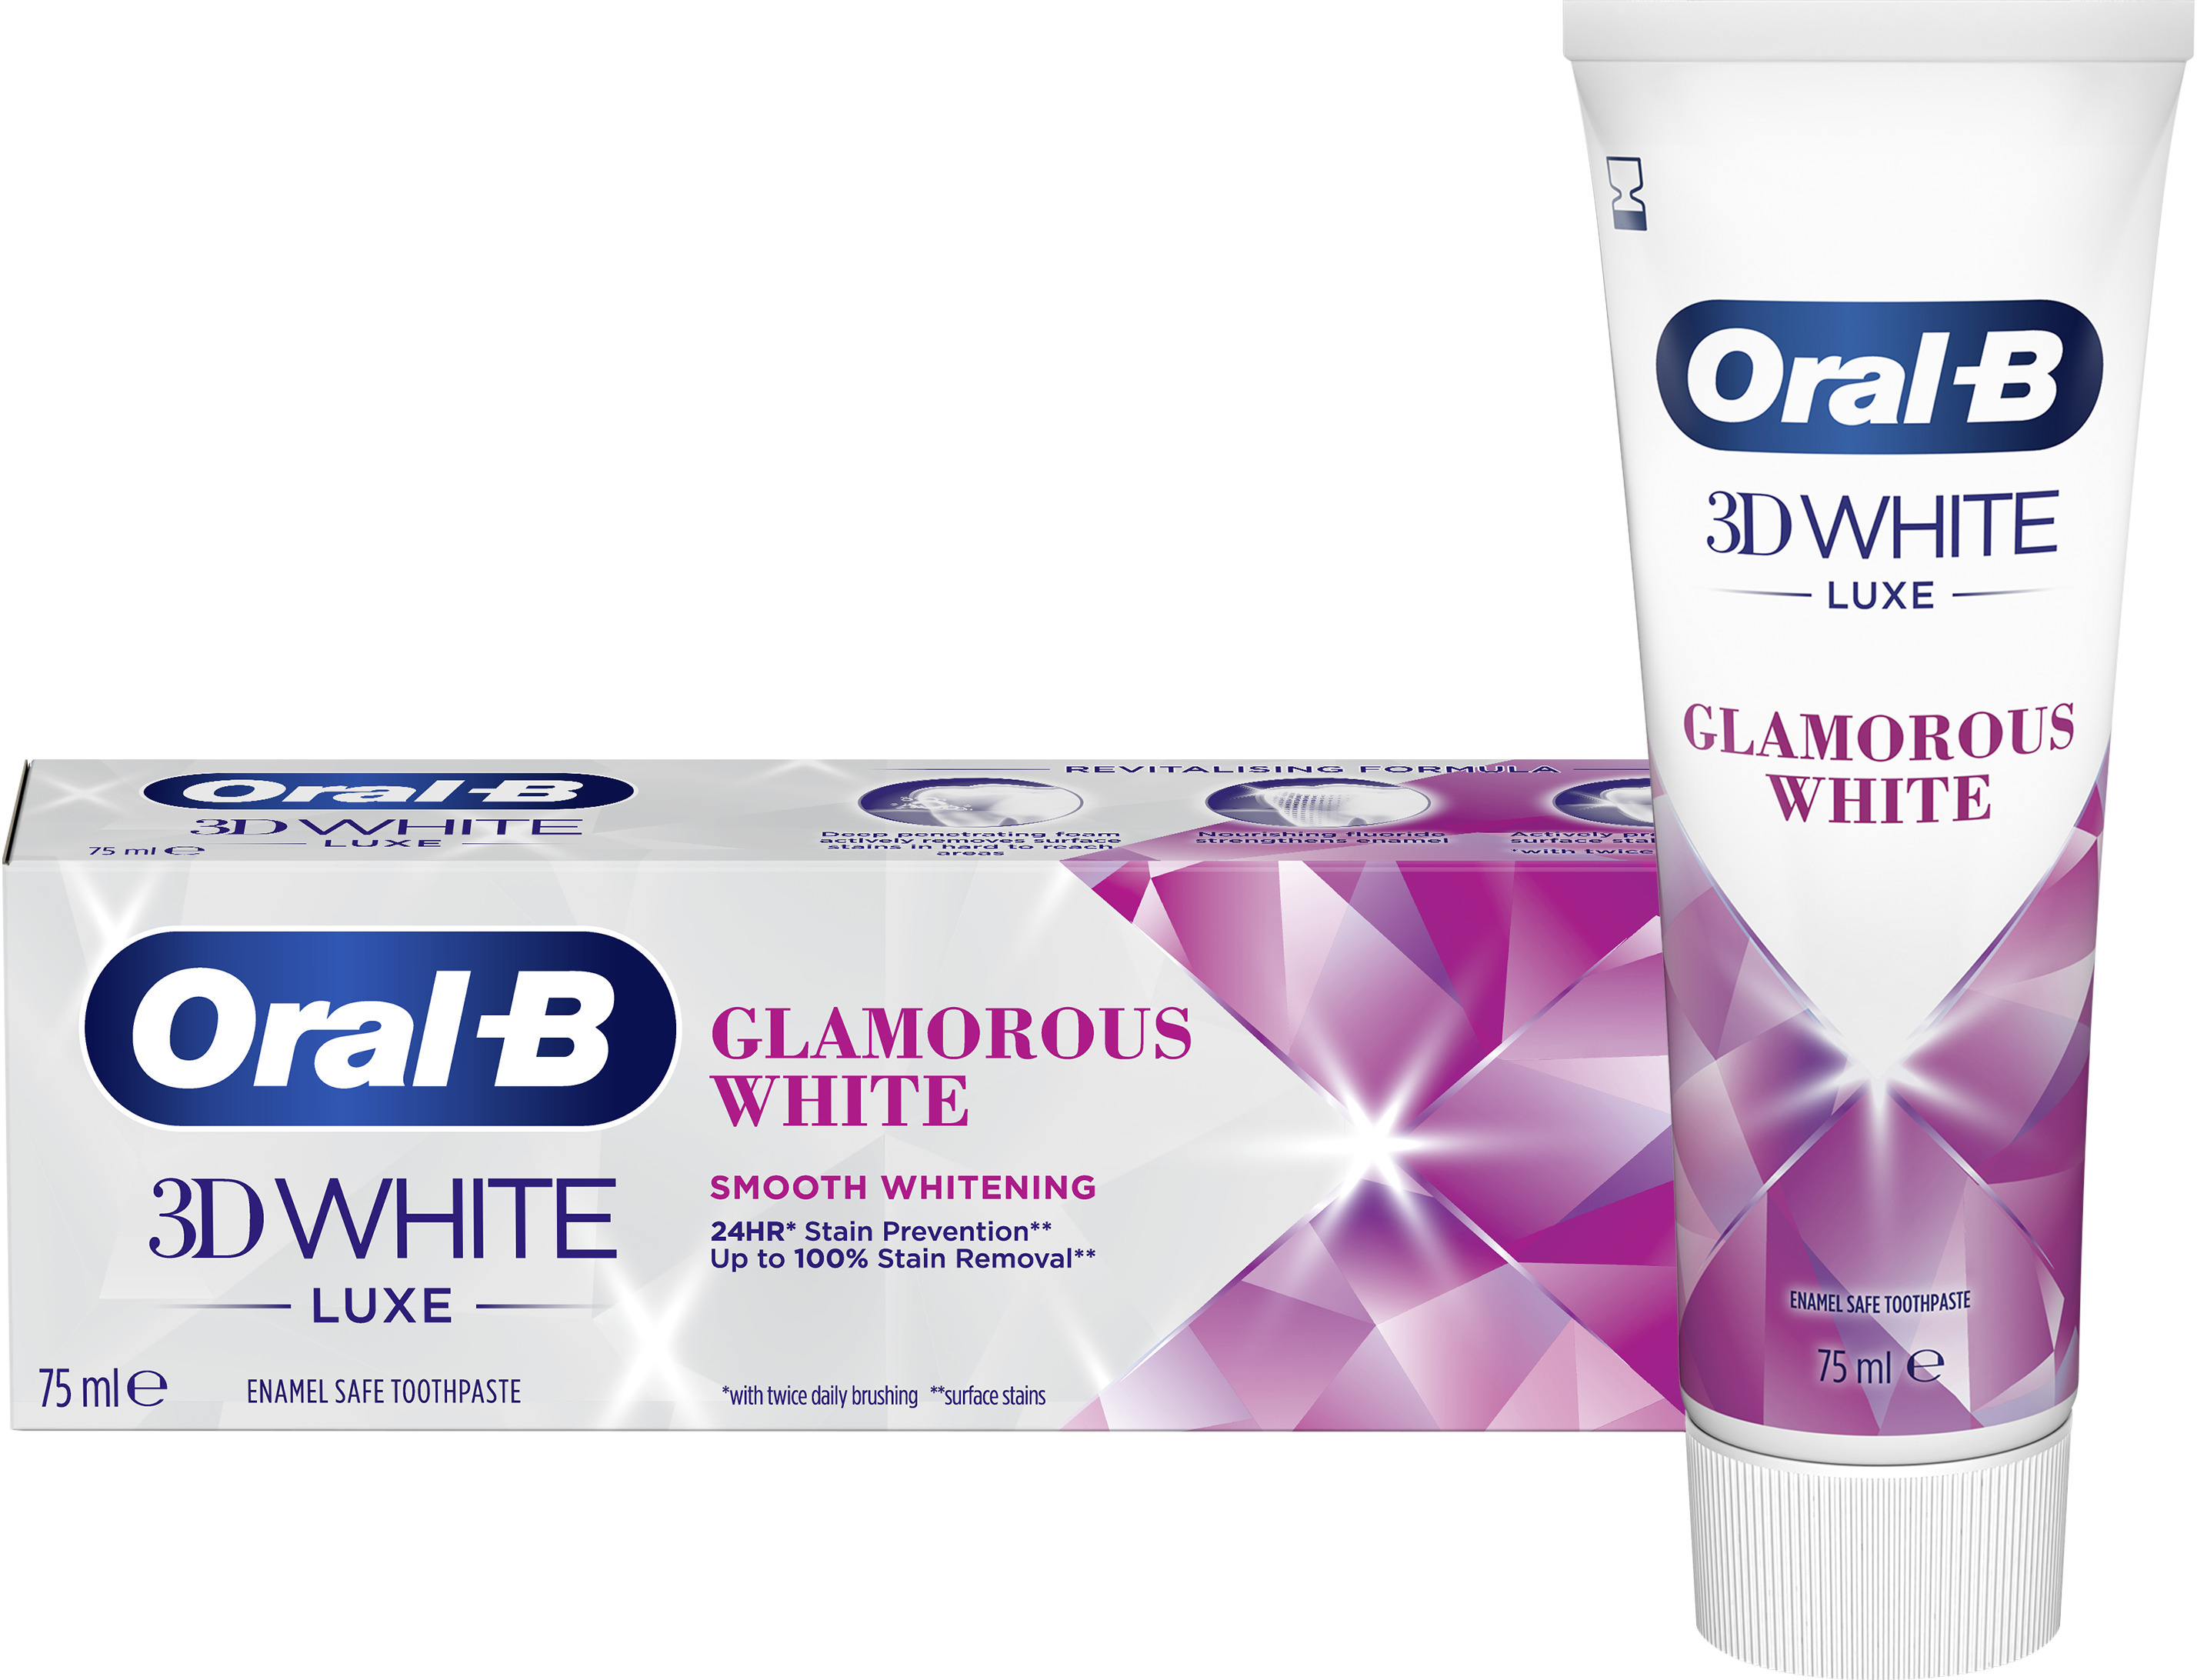 Oral-B 3D white Luxe Glamorous White 75 ml